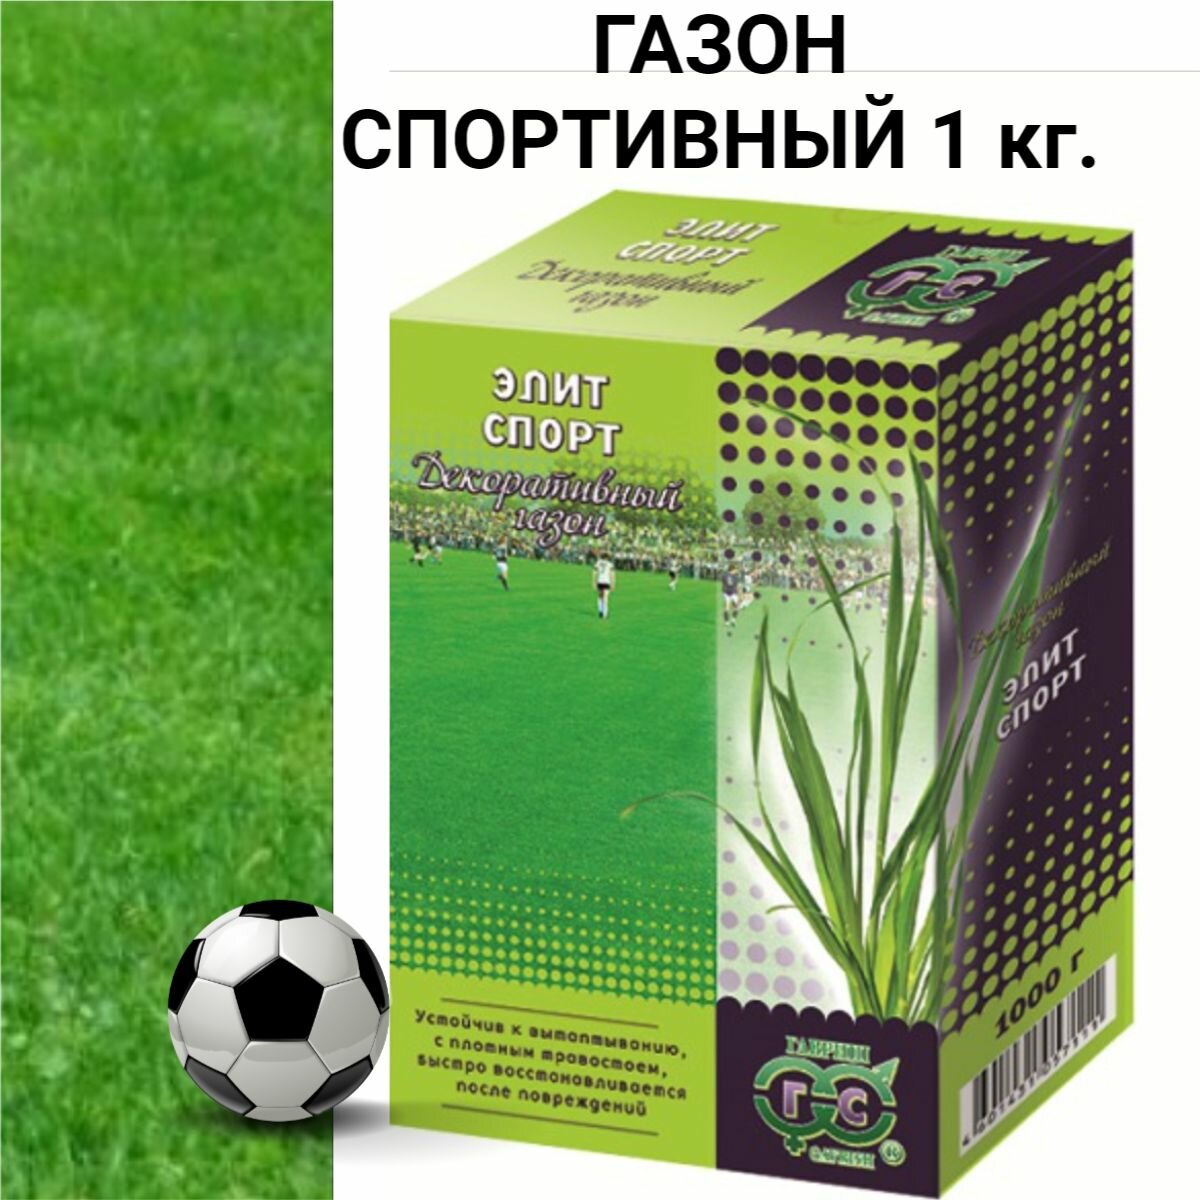 Семена газона Спортивный _ 1 кг.